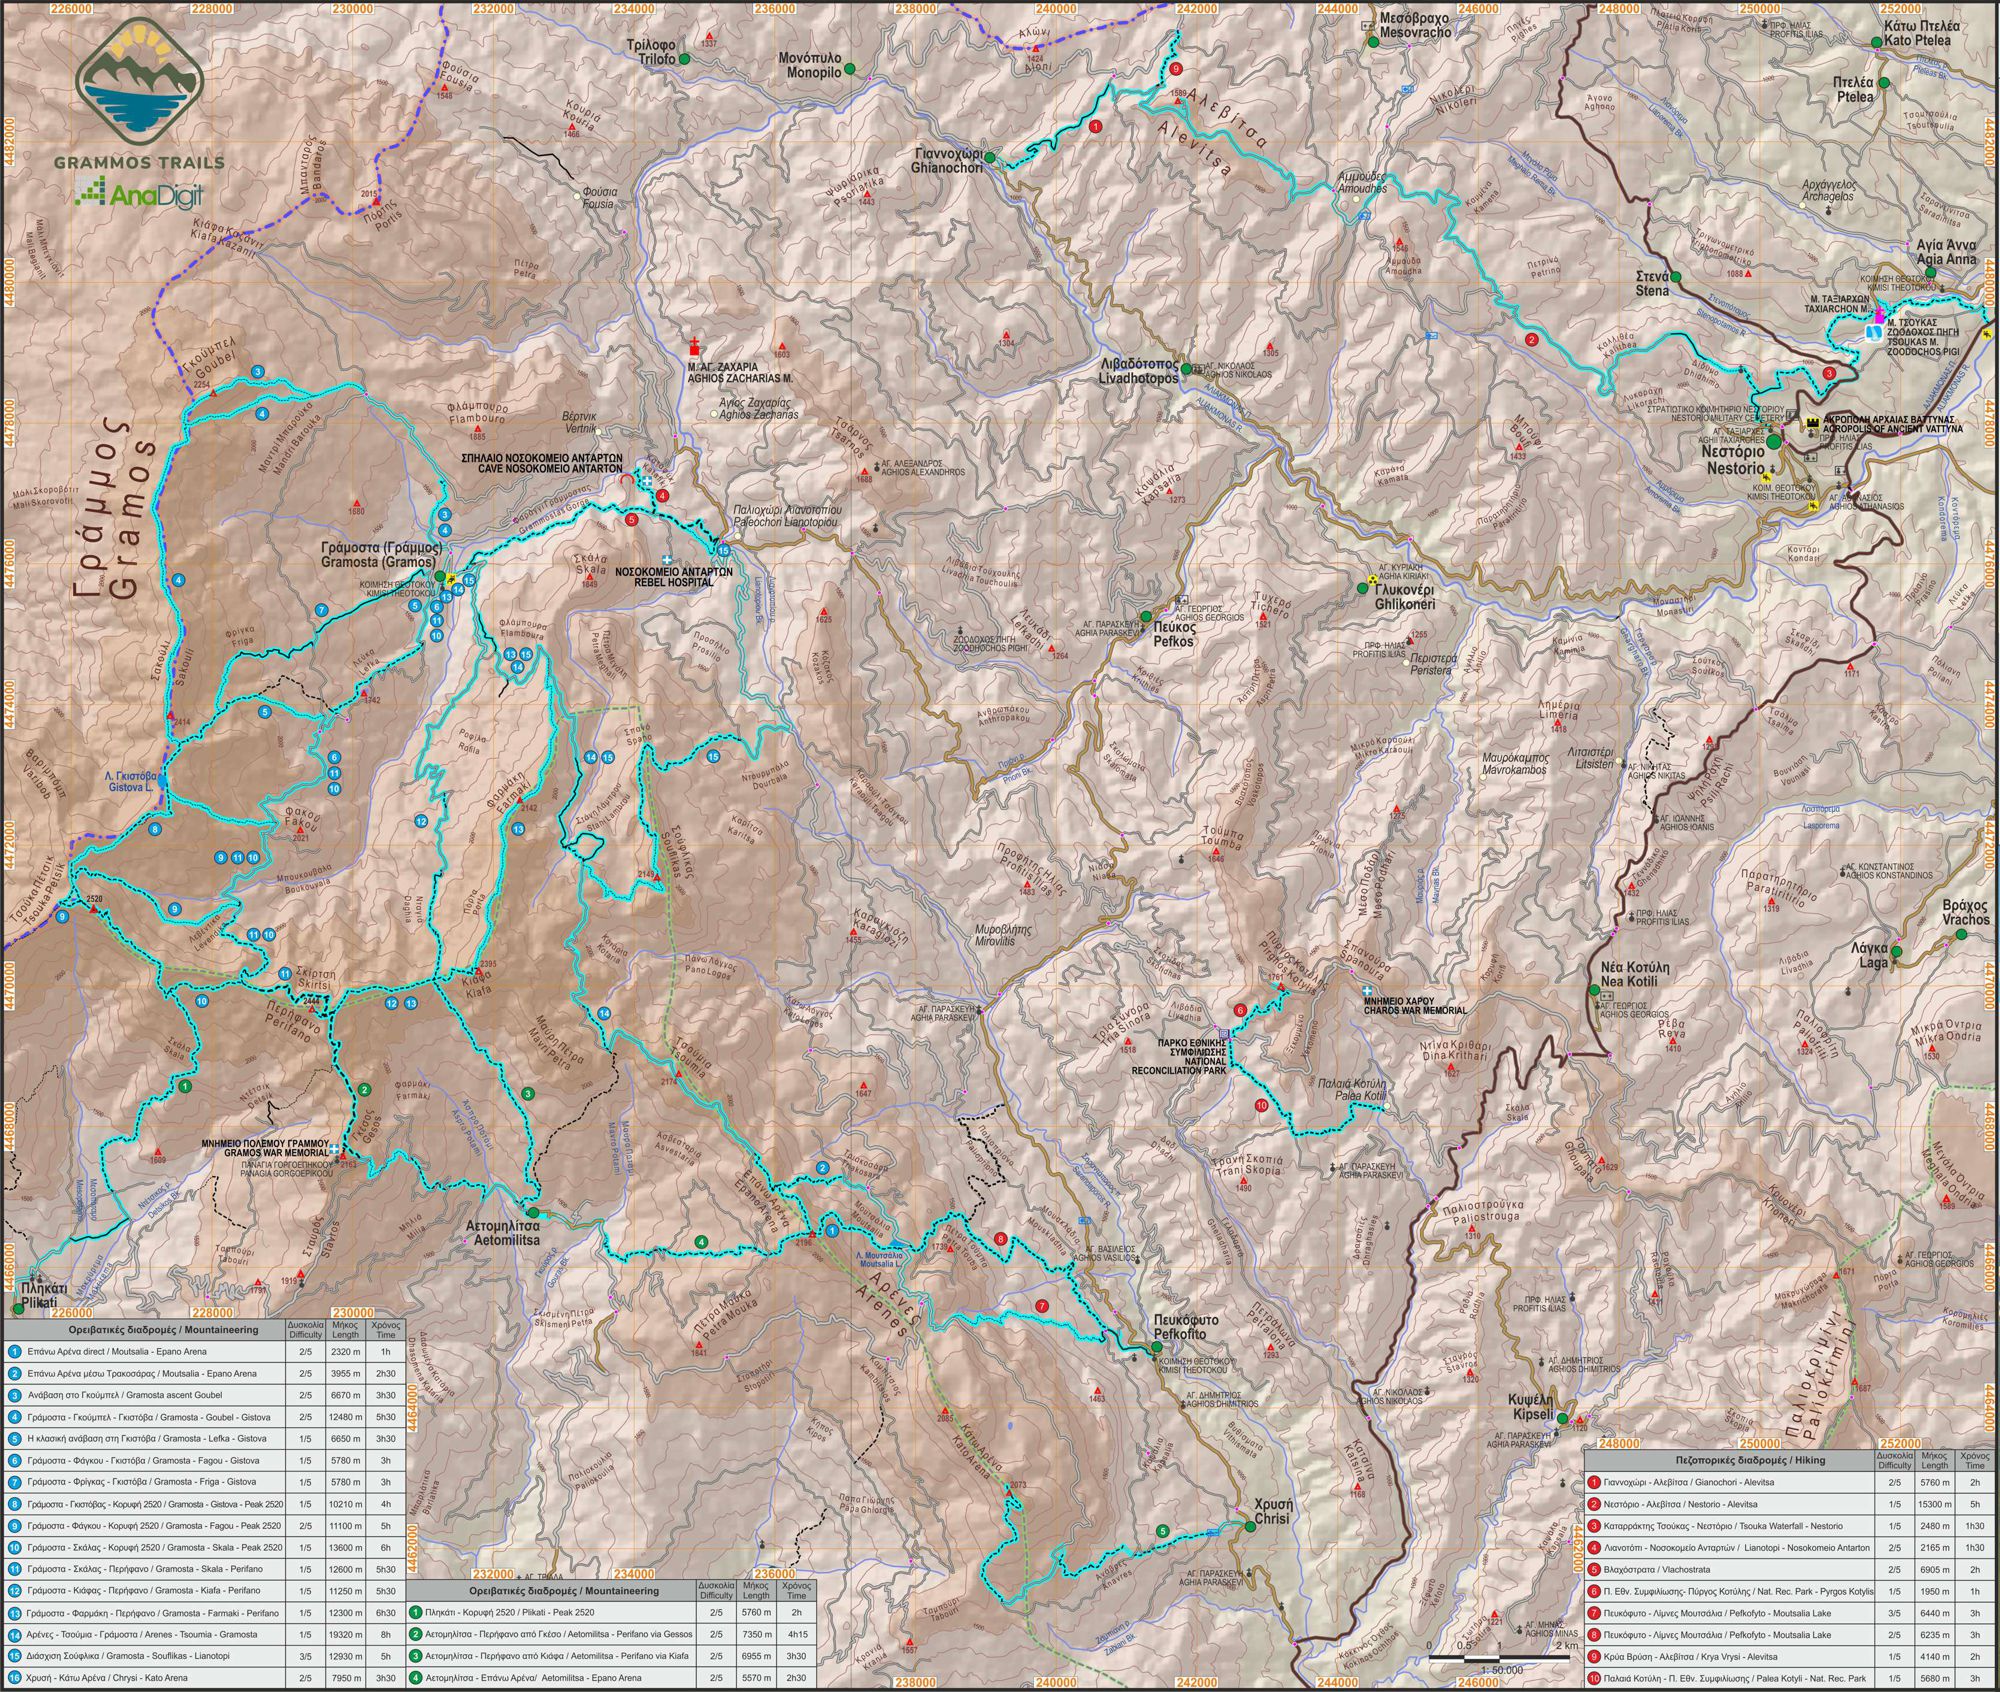 Η οργάνωση του δικτύου πεζοπορικών, ορειβατικών και ιστορικών διαδρομών Grammos Trails: Γενική εικόνα των πεζοπορικών & ορειβατικών διαδρομών στο Γράμμο